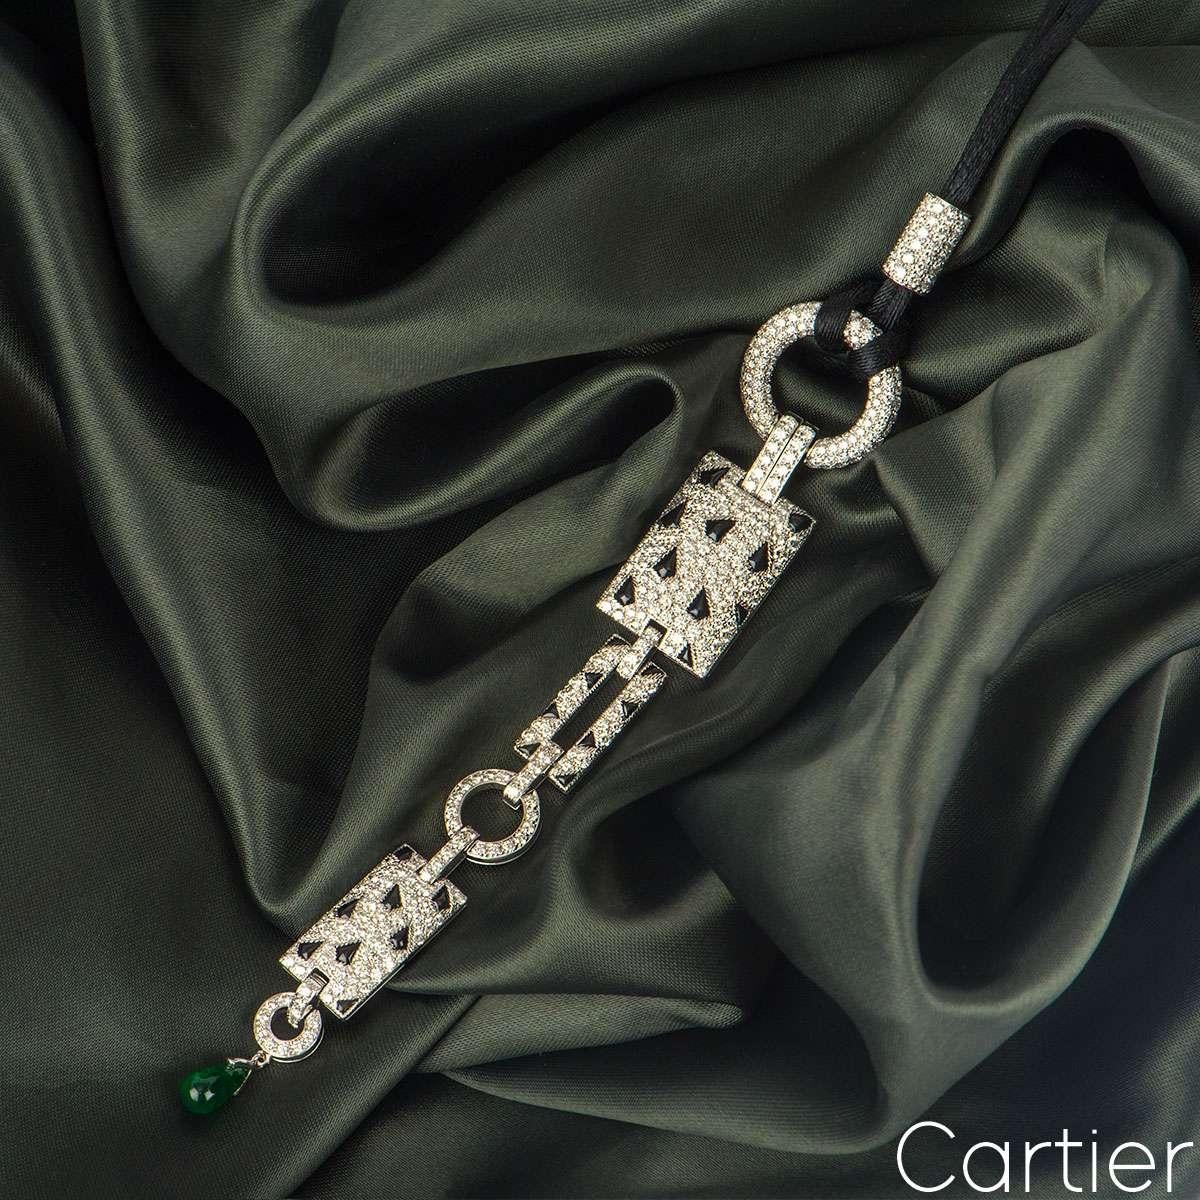 cartier jaguar necklace